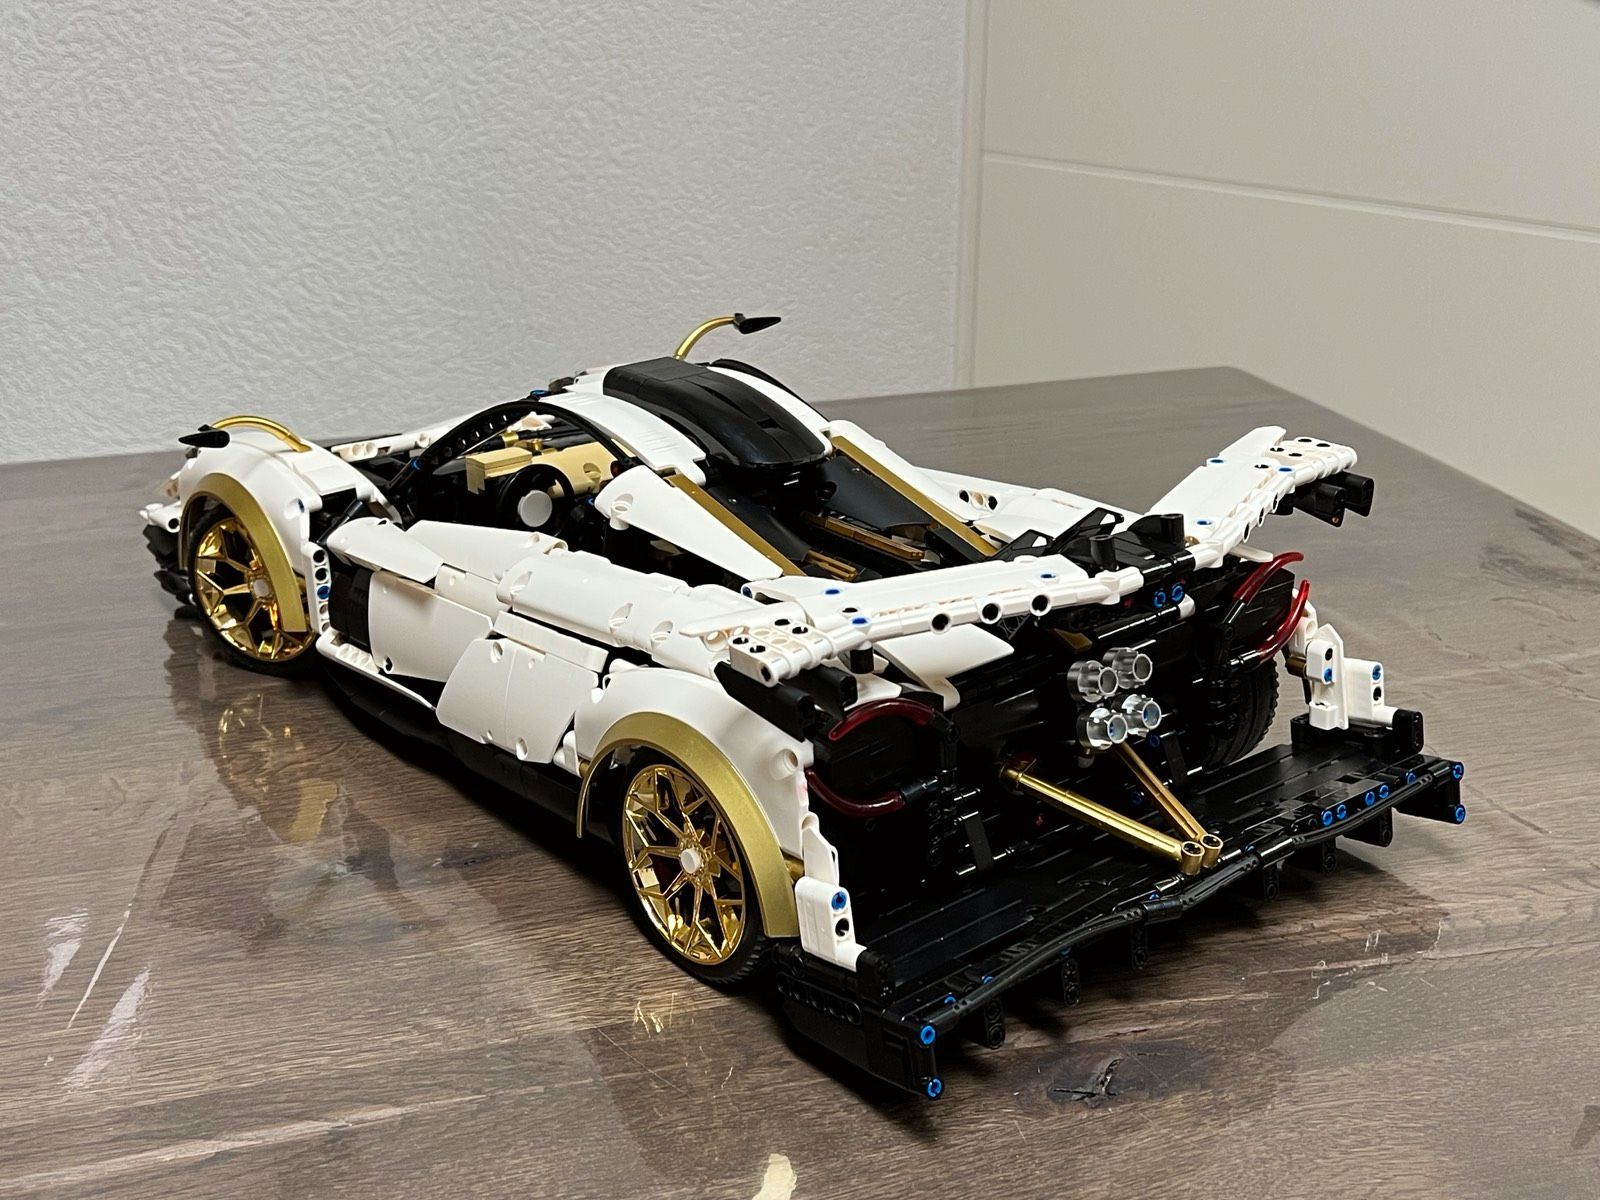  Mô Hình Nhựa 3D Lắp Ráp Kbox Siêu Xe Đua Pagani Huayrar R 10252 (3428 mảnh) 1:8 – LG0040 